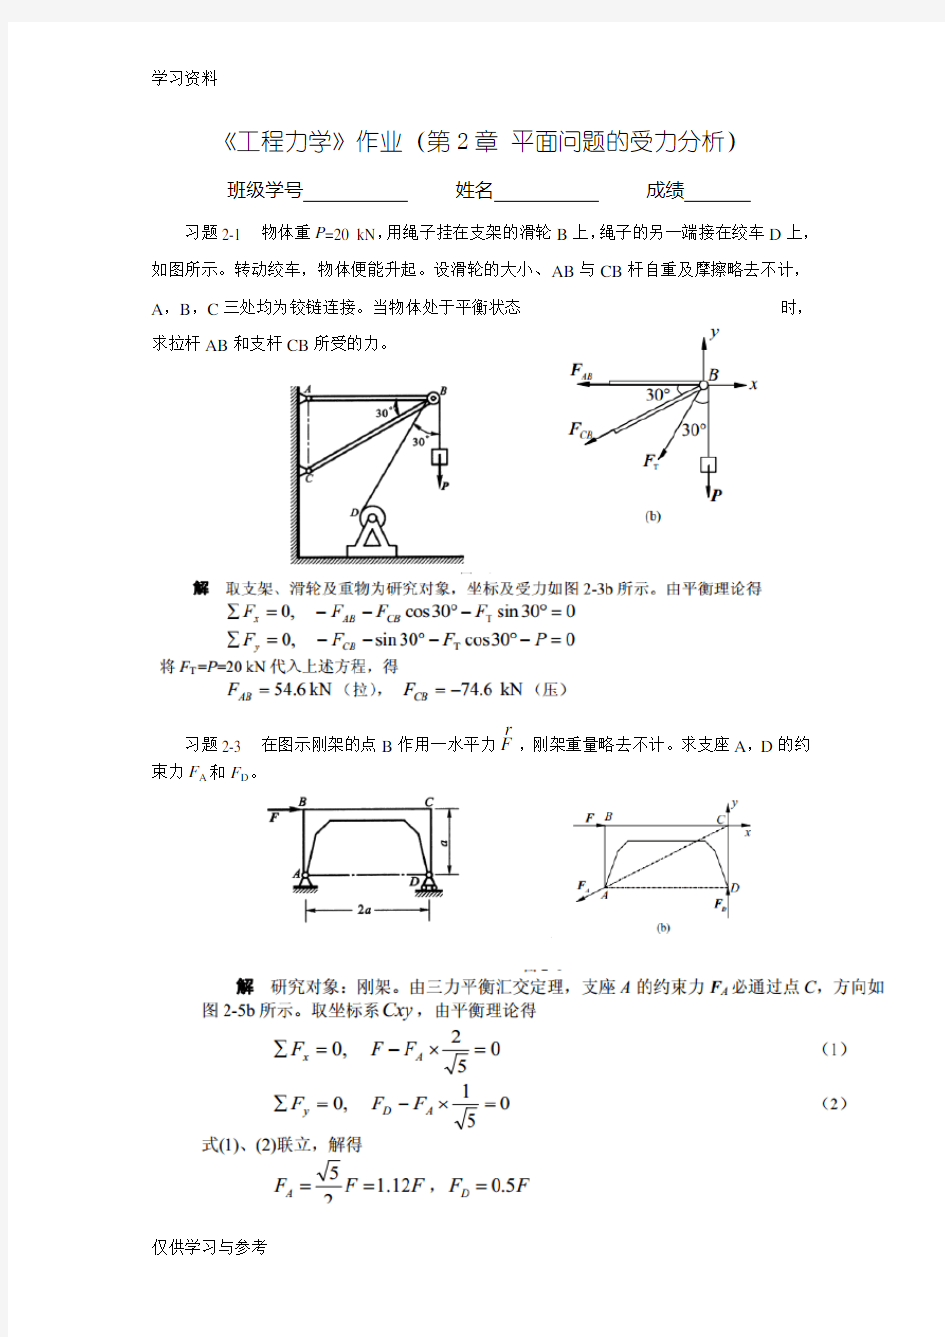 工程力学作业 (2答案)教学教材